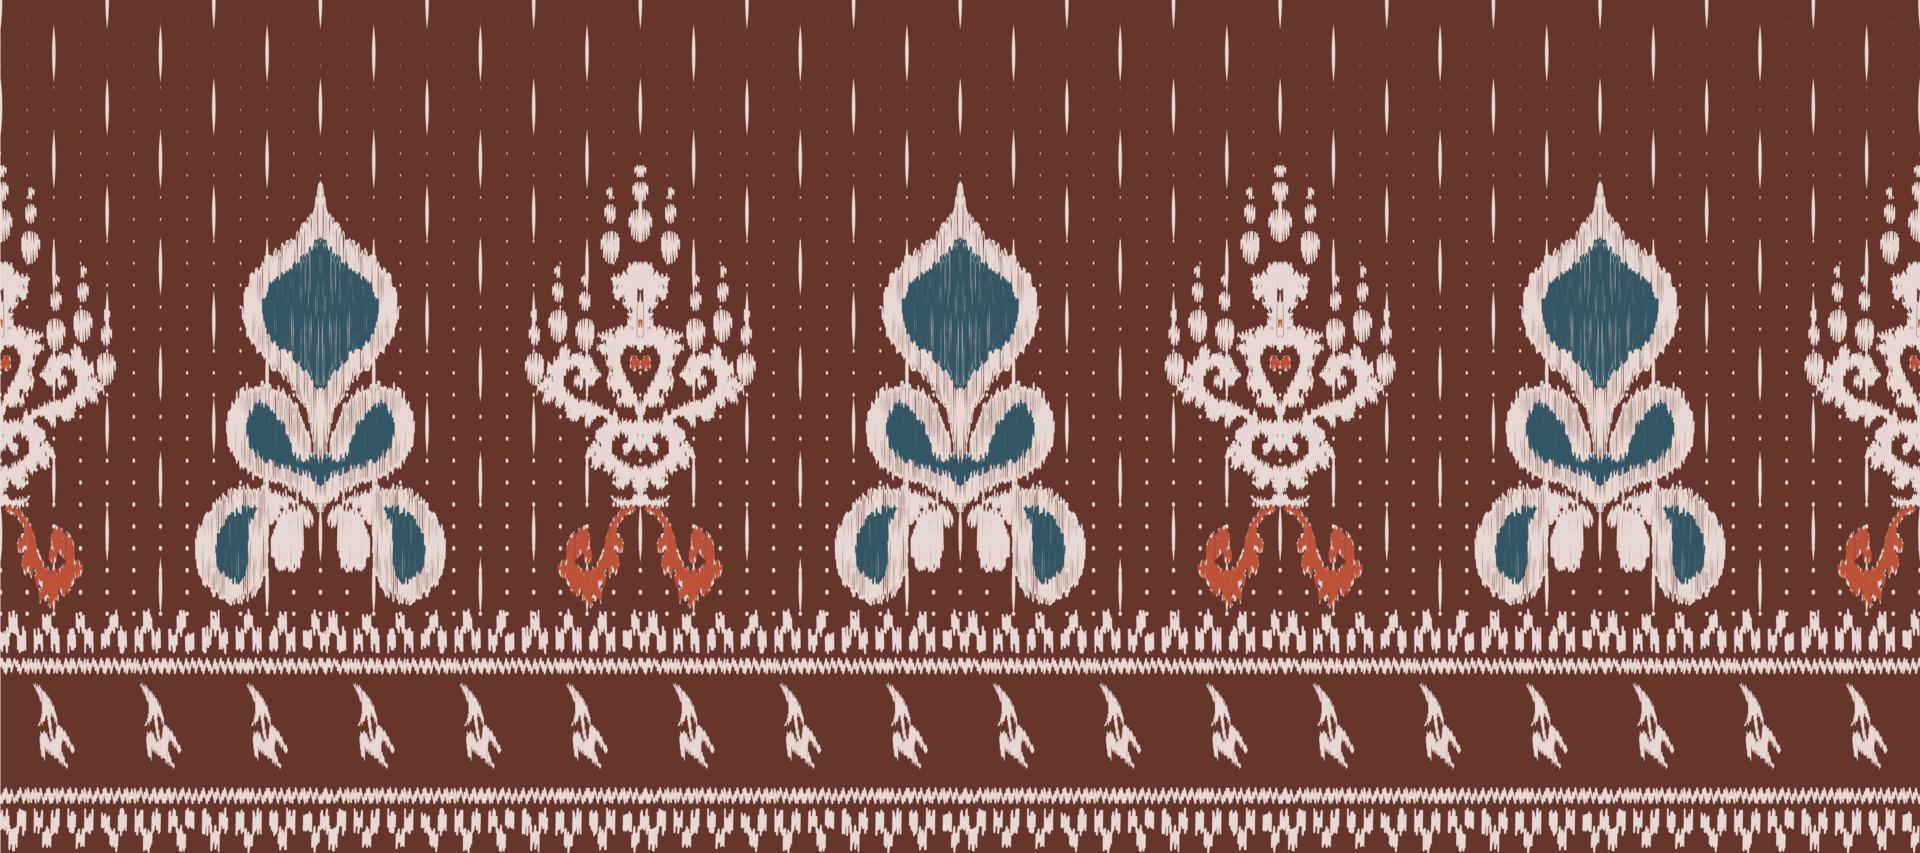 africain ikat damassé broderie Contexte. géométrique ethnique Oriental modèle traditionnel. ikat aztèque style abstrait vecteur illustration. conception pour impression texture, tissu, sari, sari, tapis.